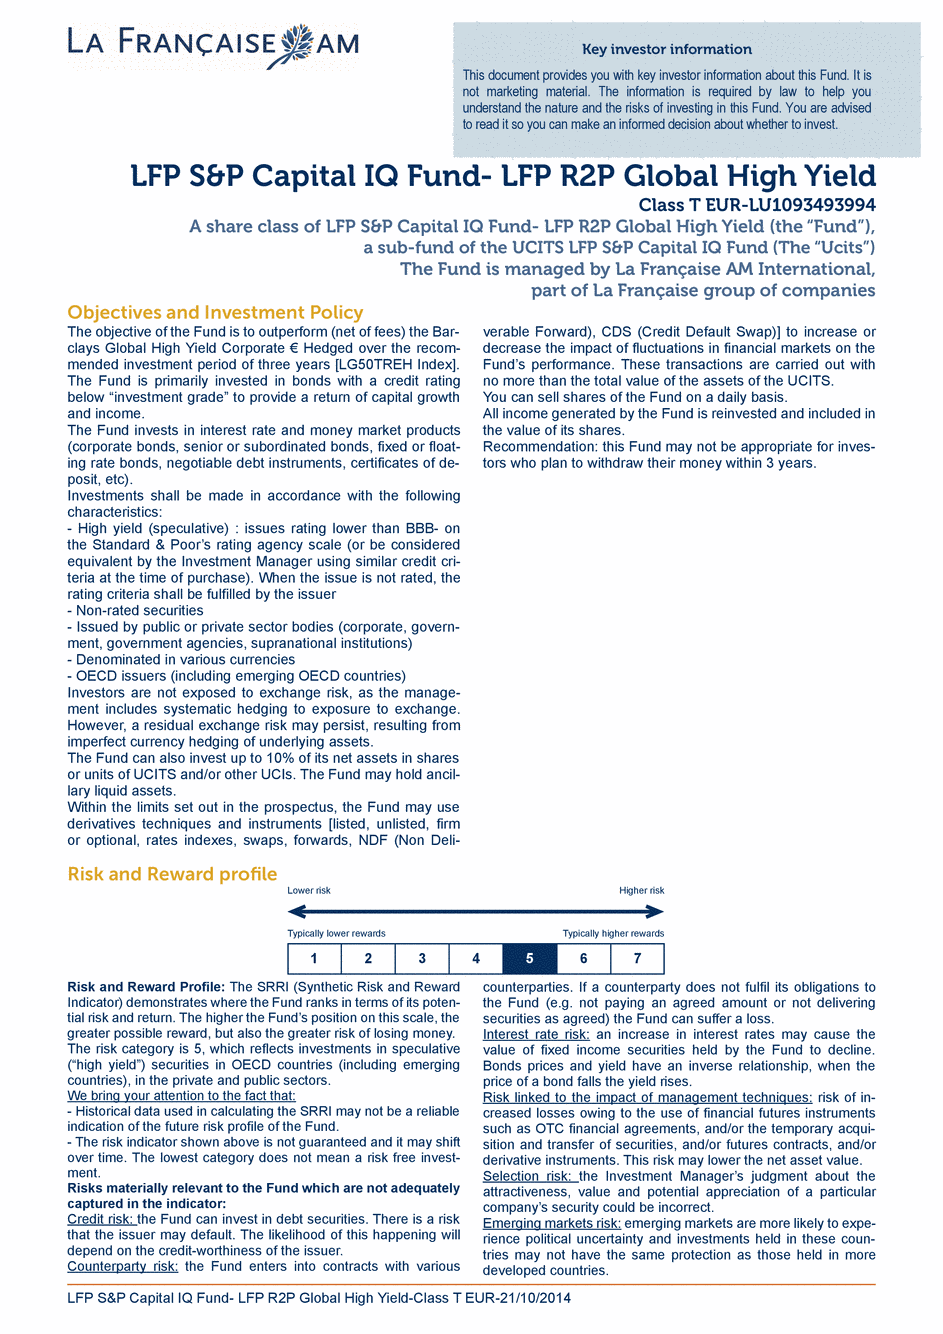 DICI LFP S&P Capital IQ Fund - LFP R2P Global High Yield T CAP EUR - 21/10/2014 - Anglais